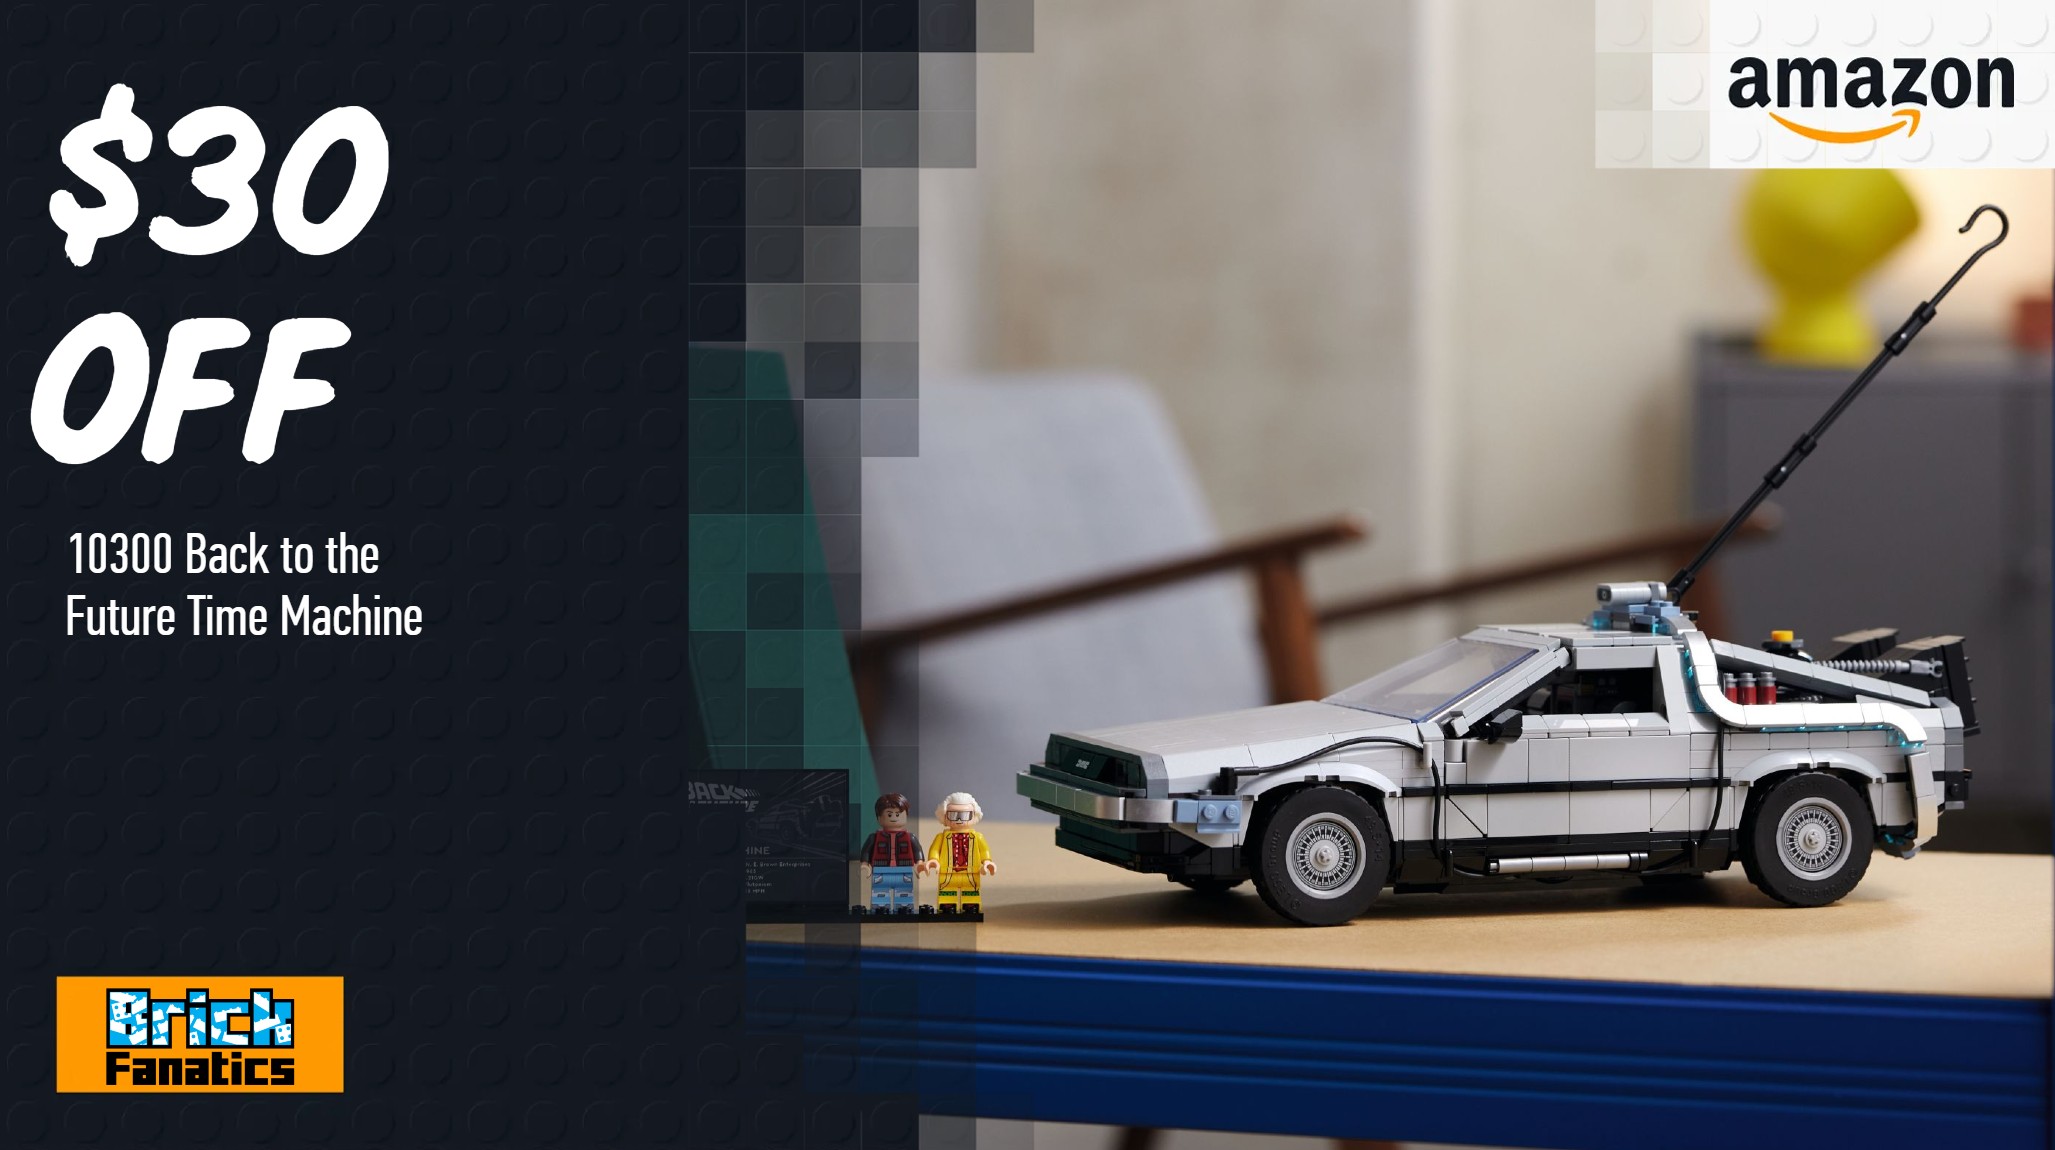 Lego DeLorean : les offres disponibles